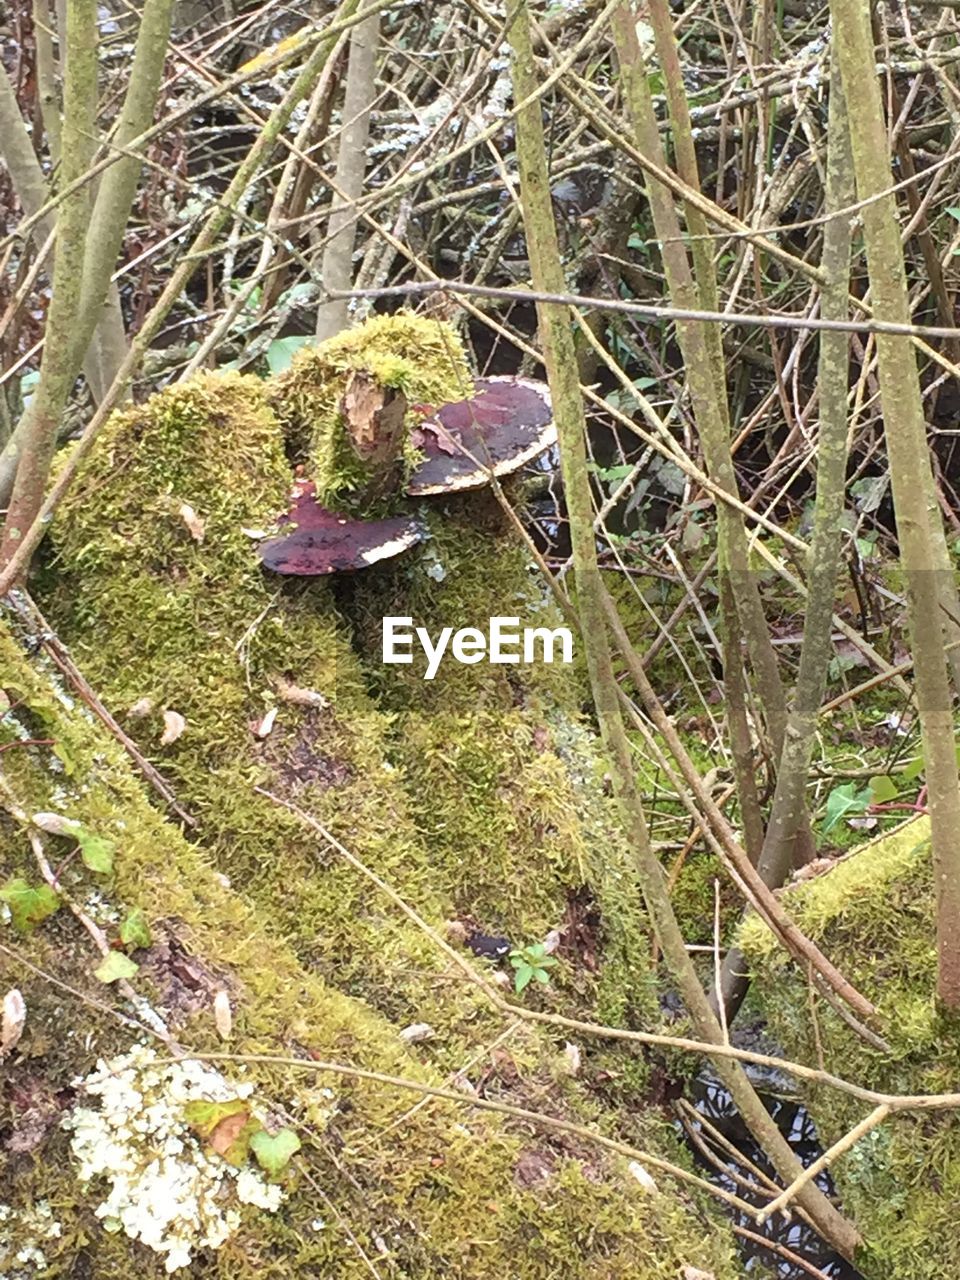 View of mushroom growing on wood